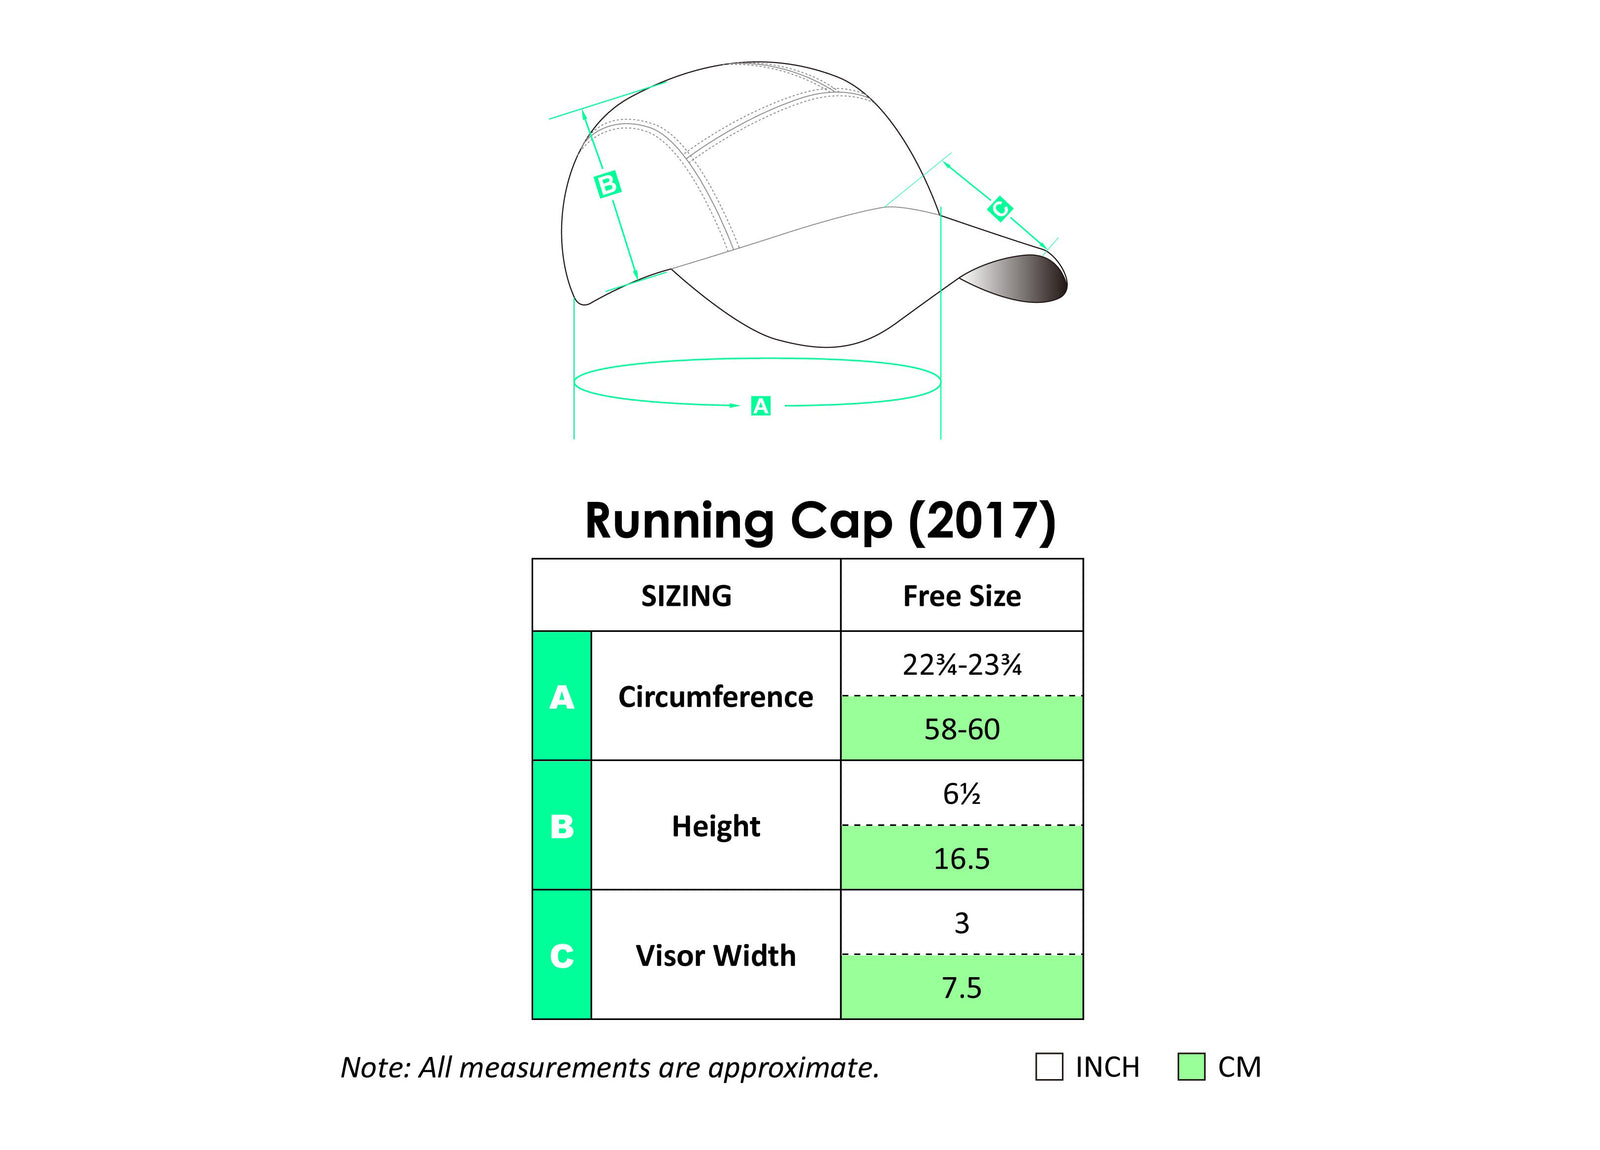 GTC CG001 Running cap (White)